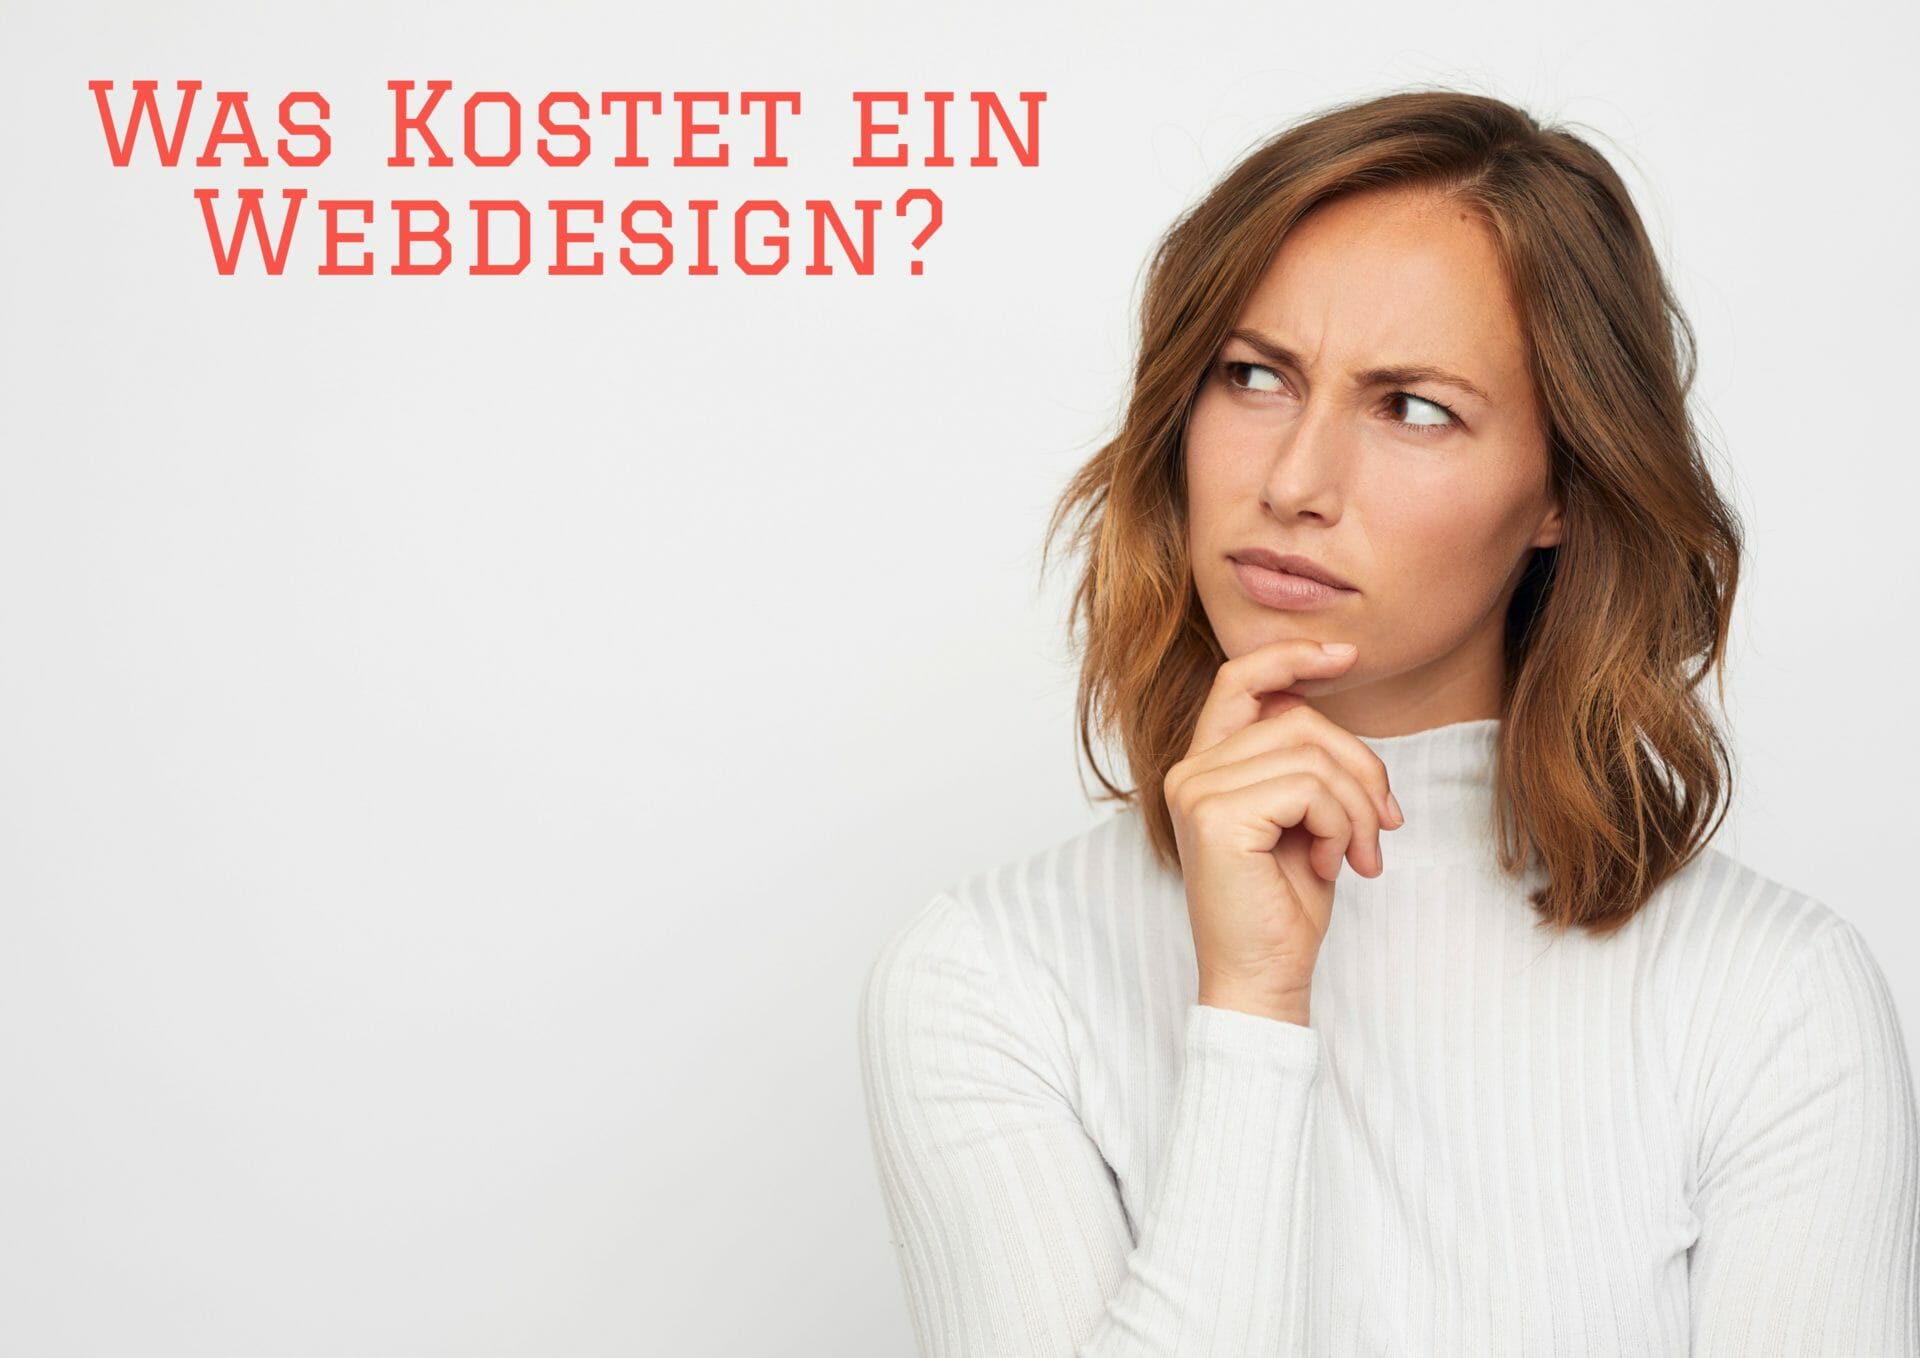 Was Kostet ein Webdesign?